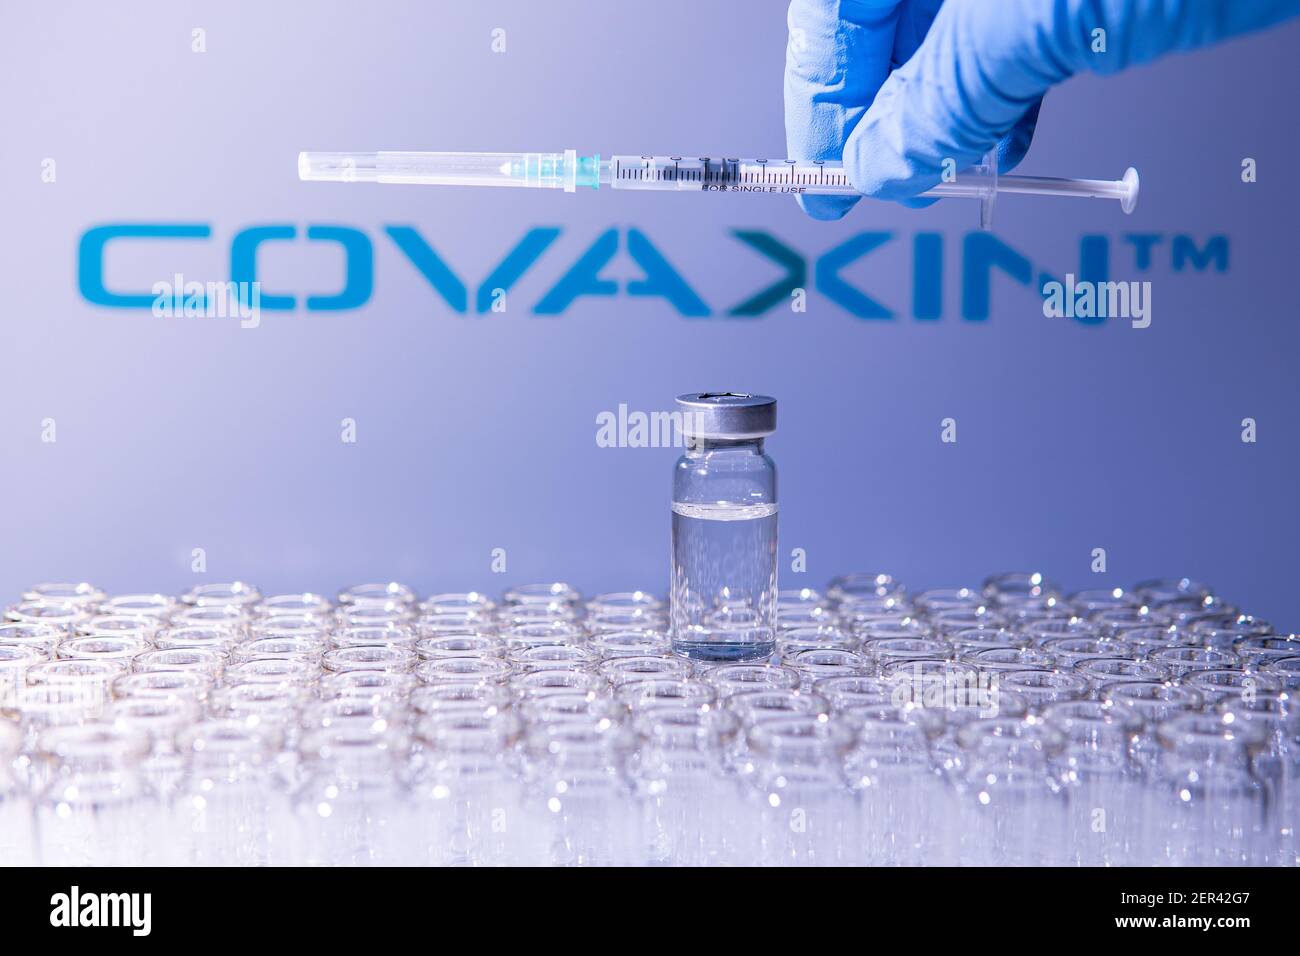 Toronto (Ontario), Canada - le 14 février 2021 : UN travailleur de la santé se prépare à administrer une dose du vaccin indien Covaxin. Le nom de la société est flou Banque D'Images